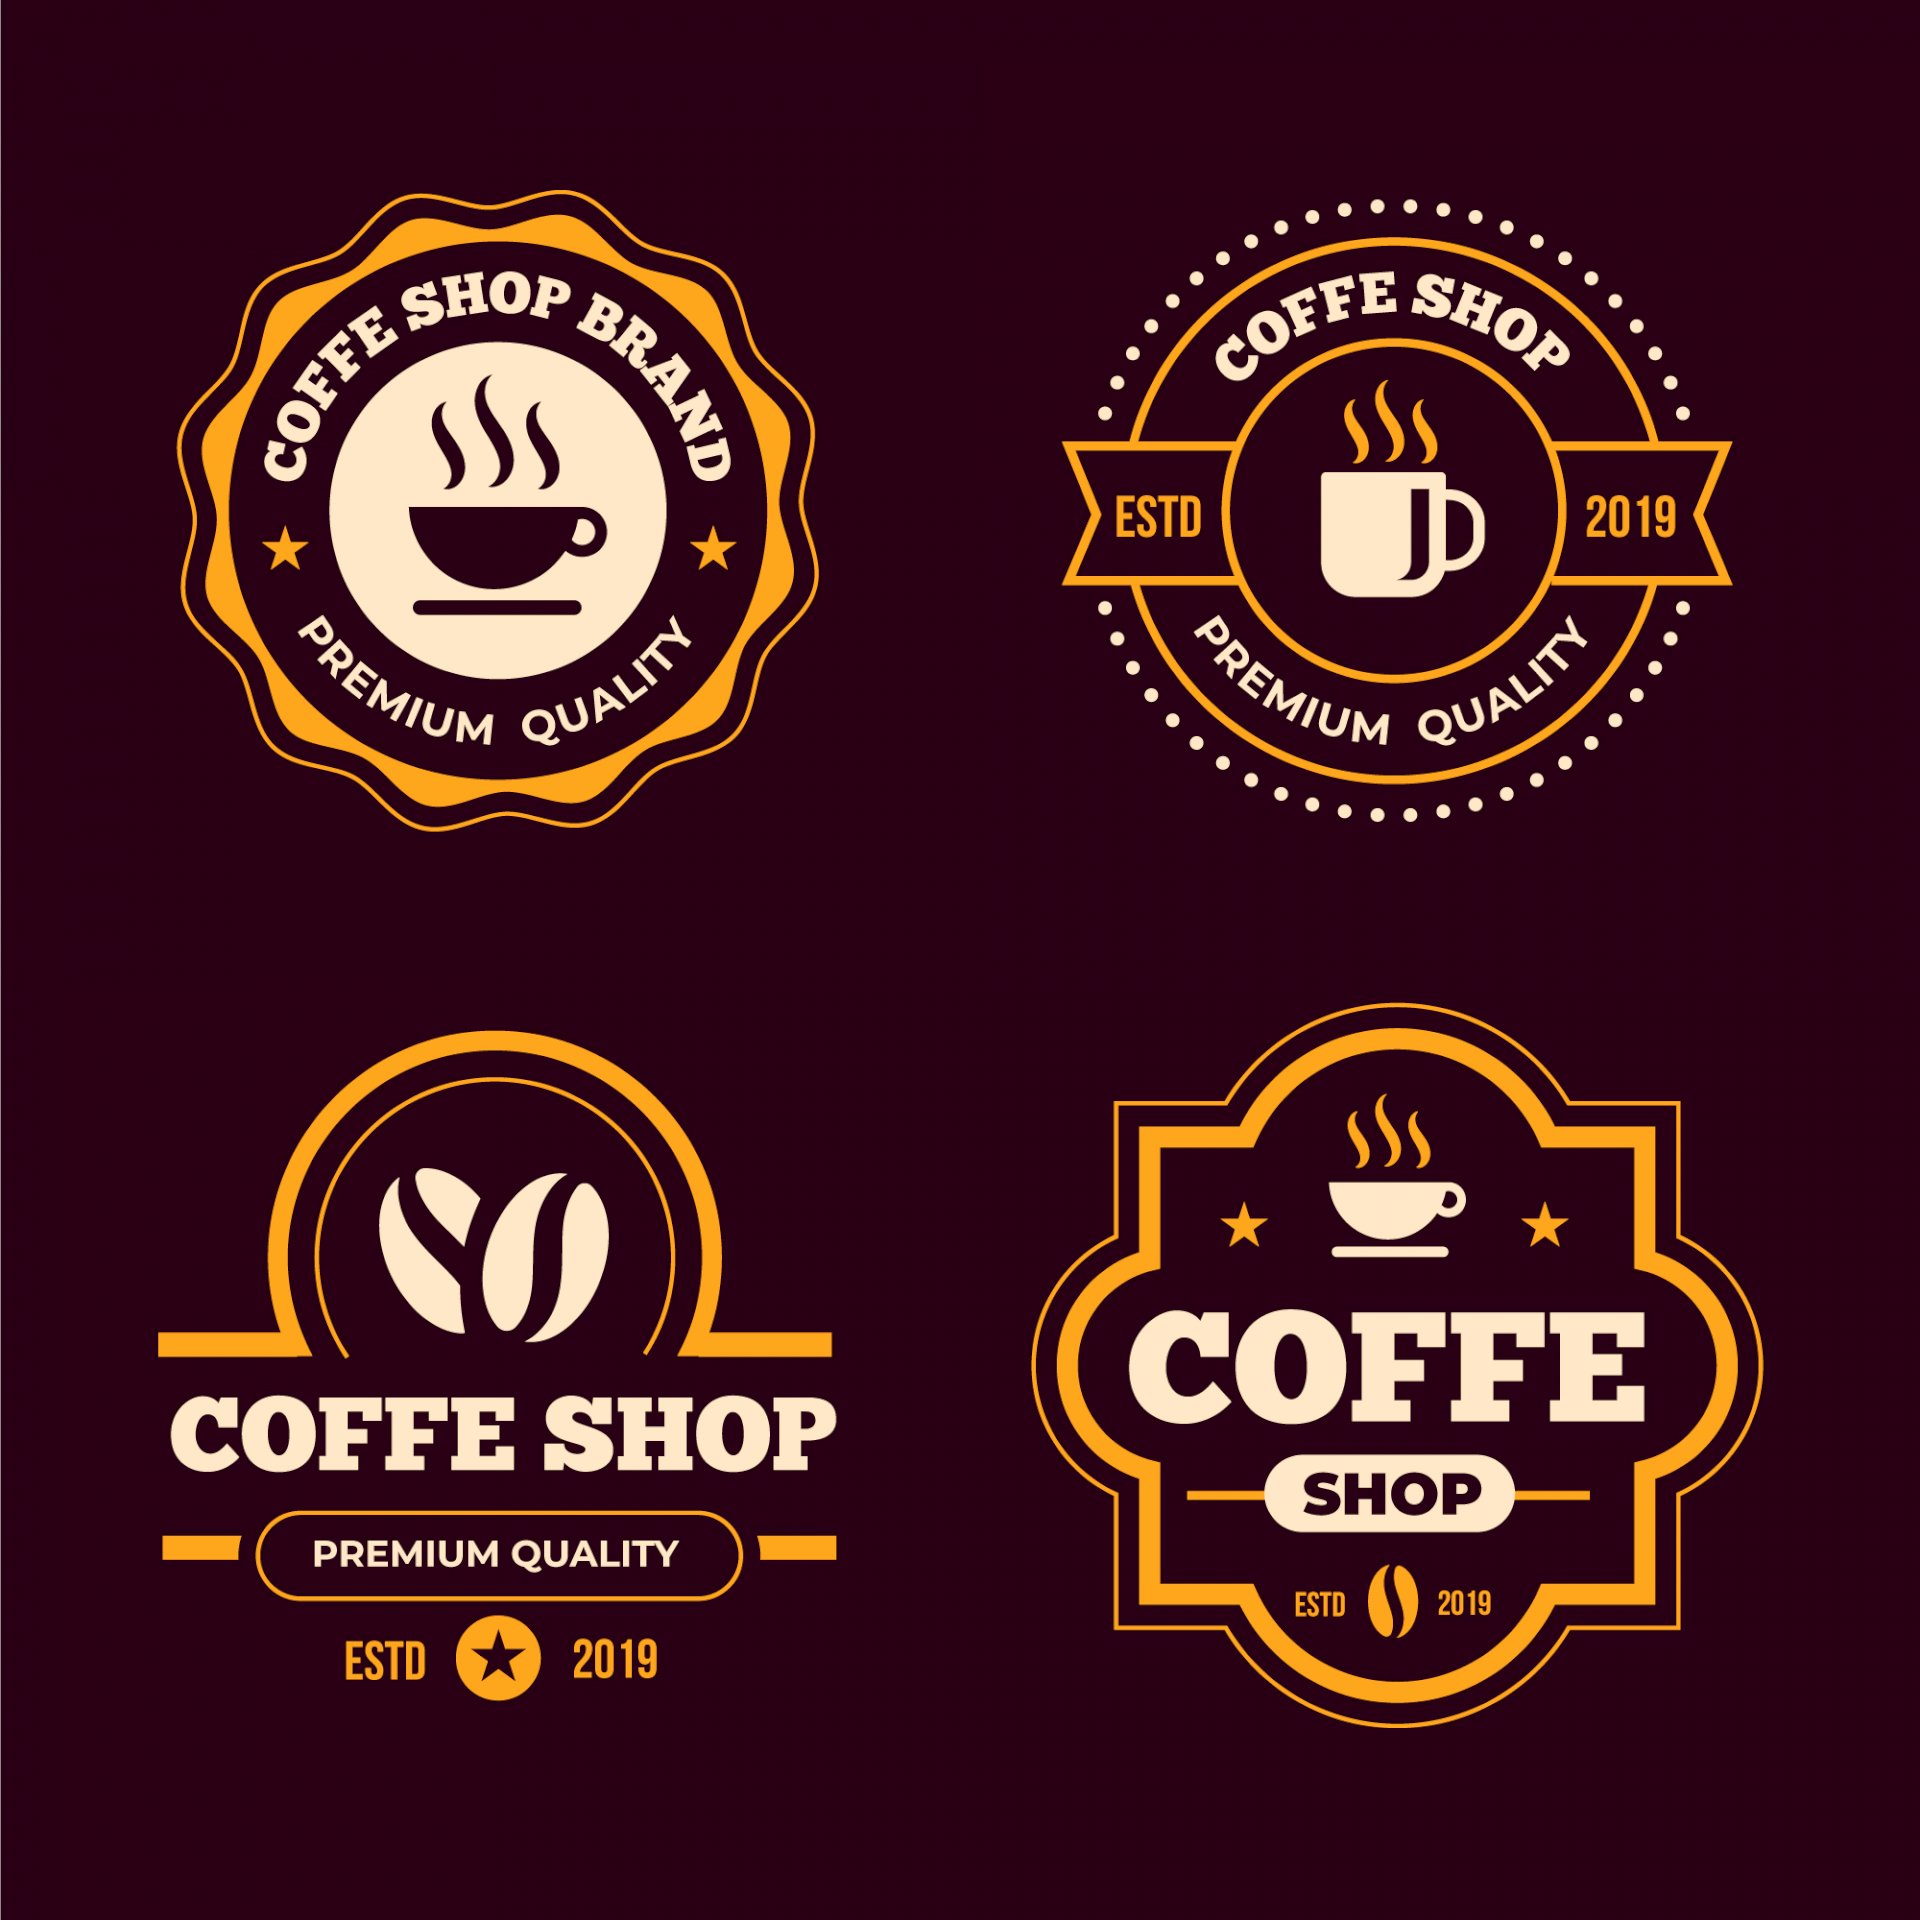 Cách tải và sử dụng mẫu vector logo cafe miễn phí như thế nào?
